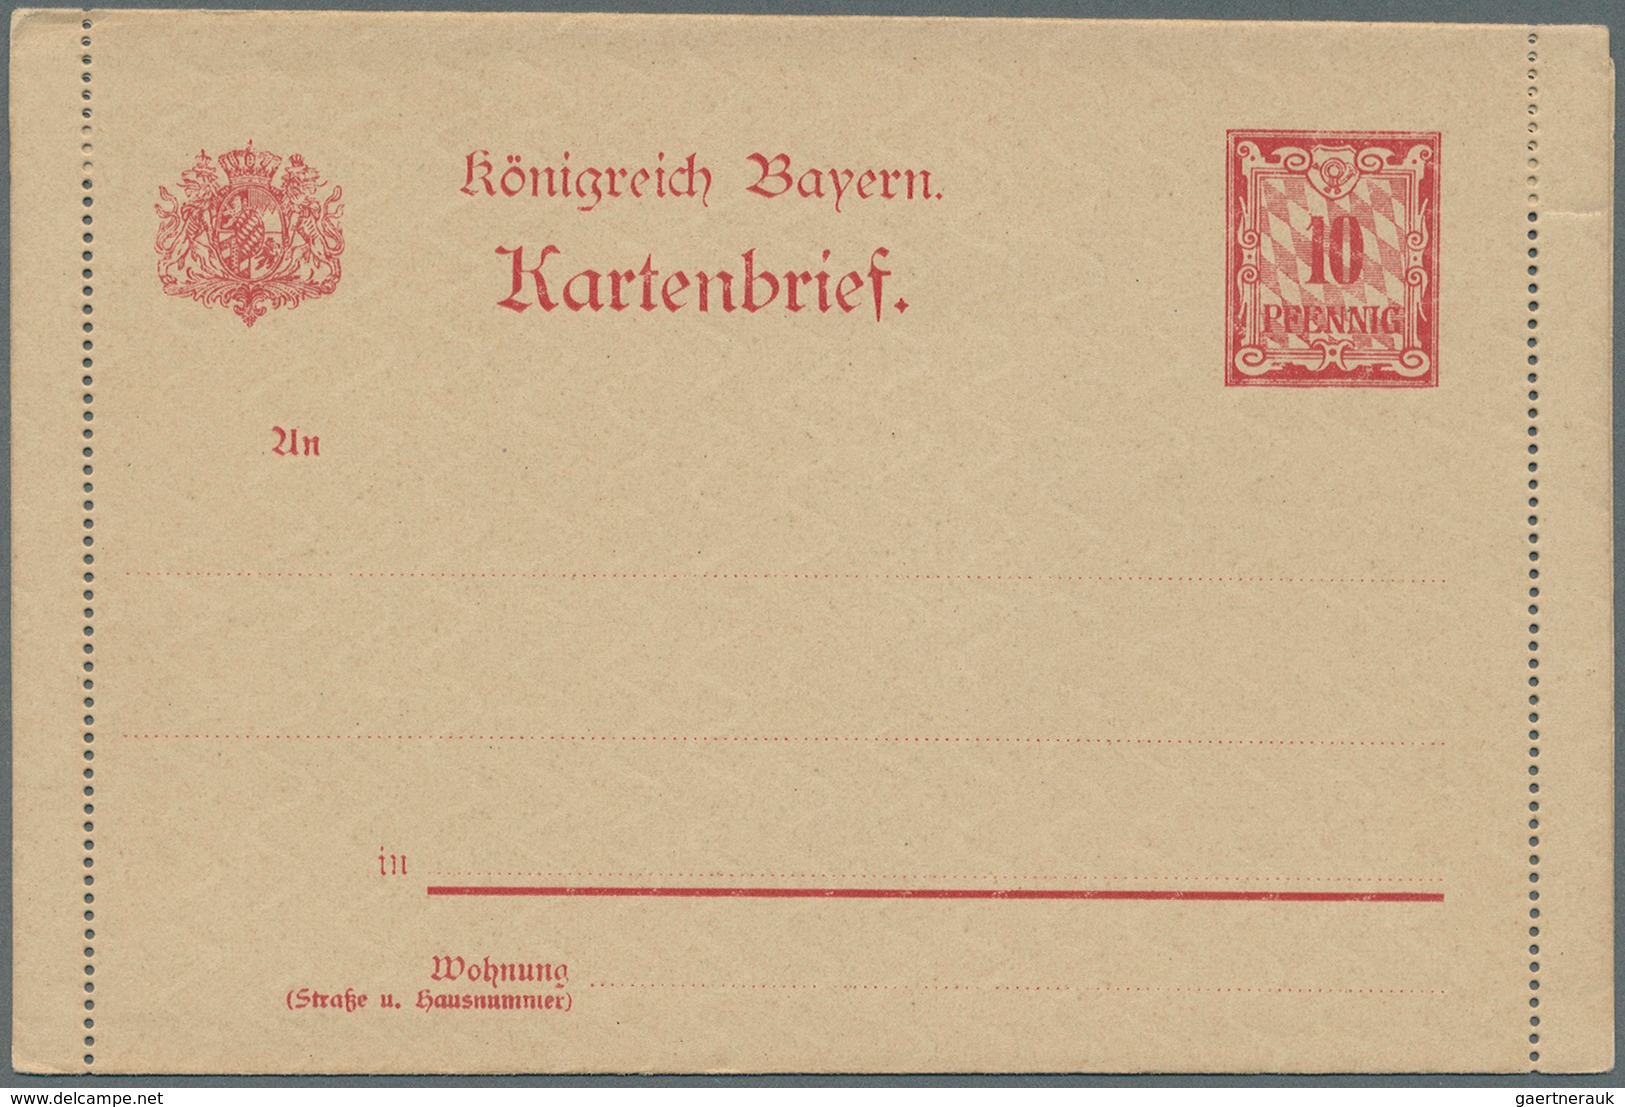 31232 Bayern - Ganzsachen: 1874/1920, Sauberer Posten von über 90 ungebrauchten Ganzsachen in frischer Erh